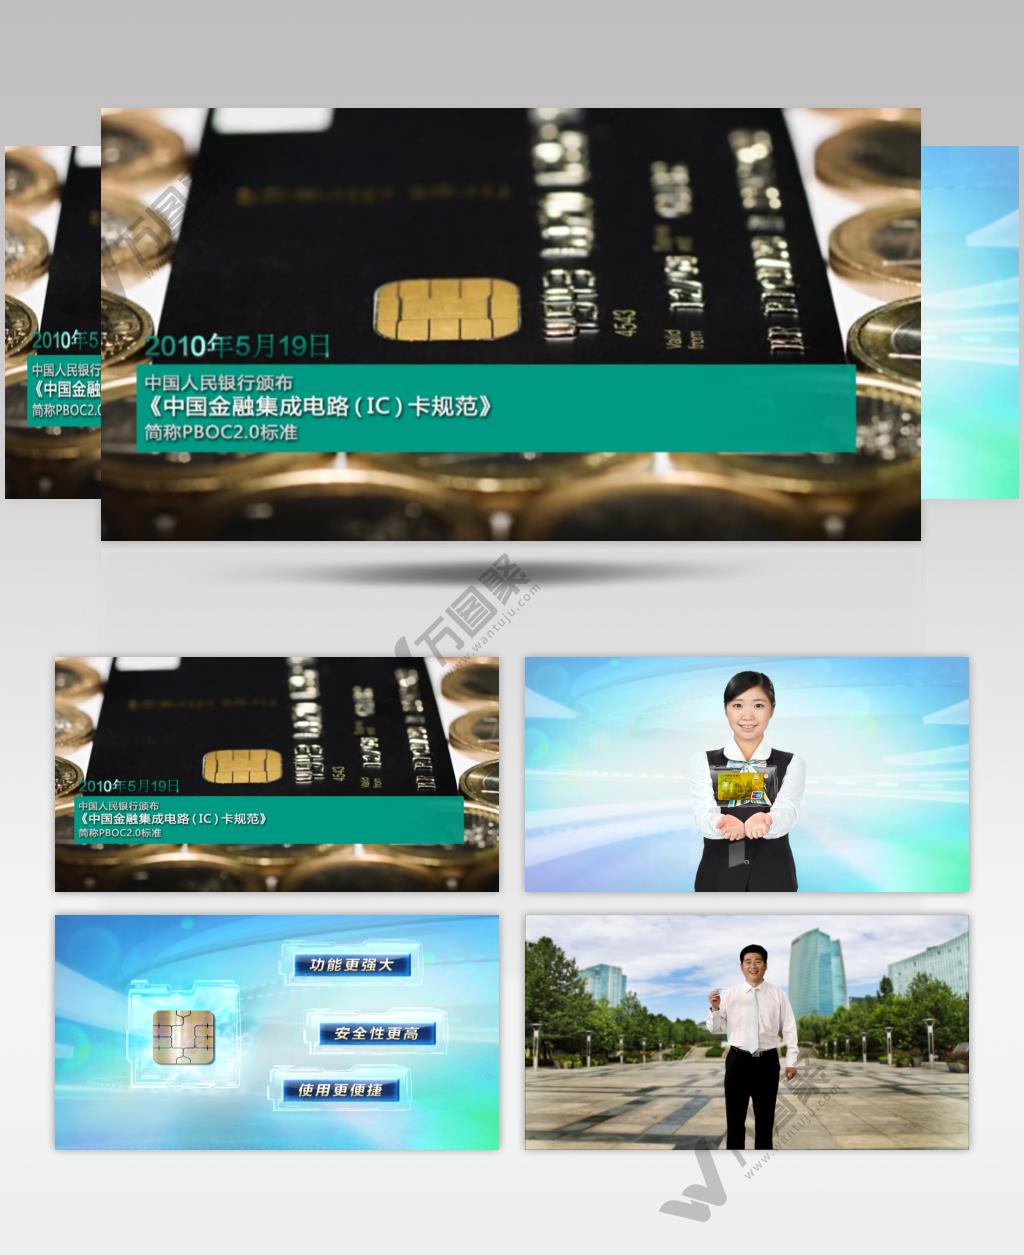 中国农业银行金融IC卡版高清中国企业事业宣传片公司单位宣传片_batch